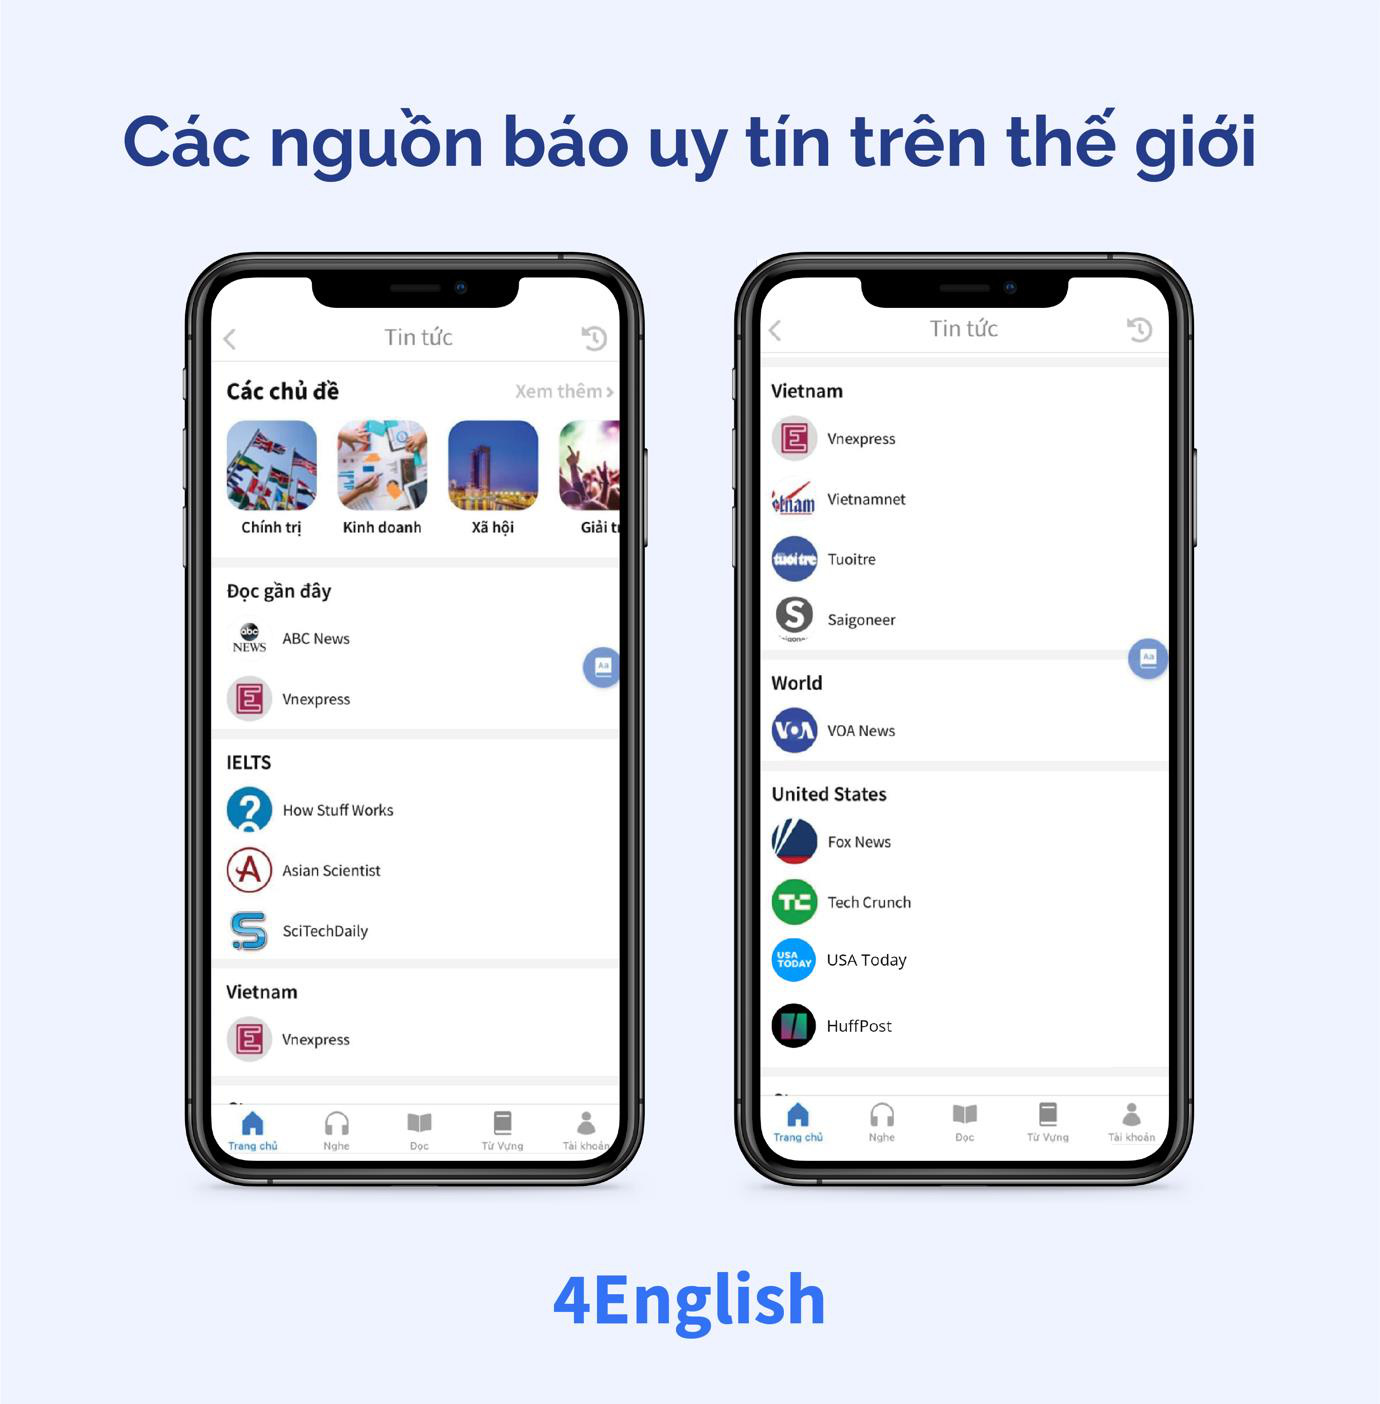 Ứng dụng Make in Vietnam giúp bạn vừa đọc báo vừa học tiếng Anh một công đôi việc - Ảnh 1.